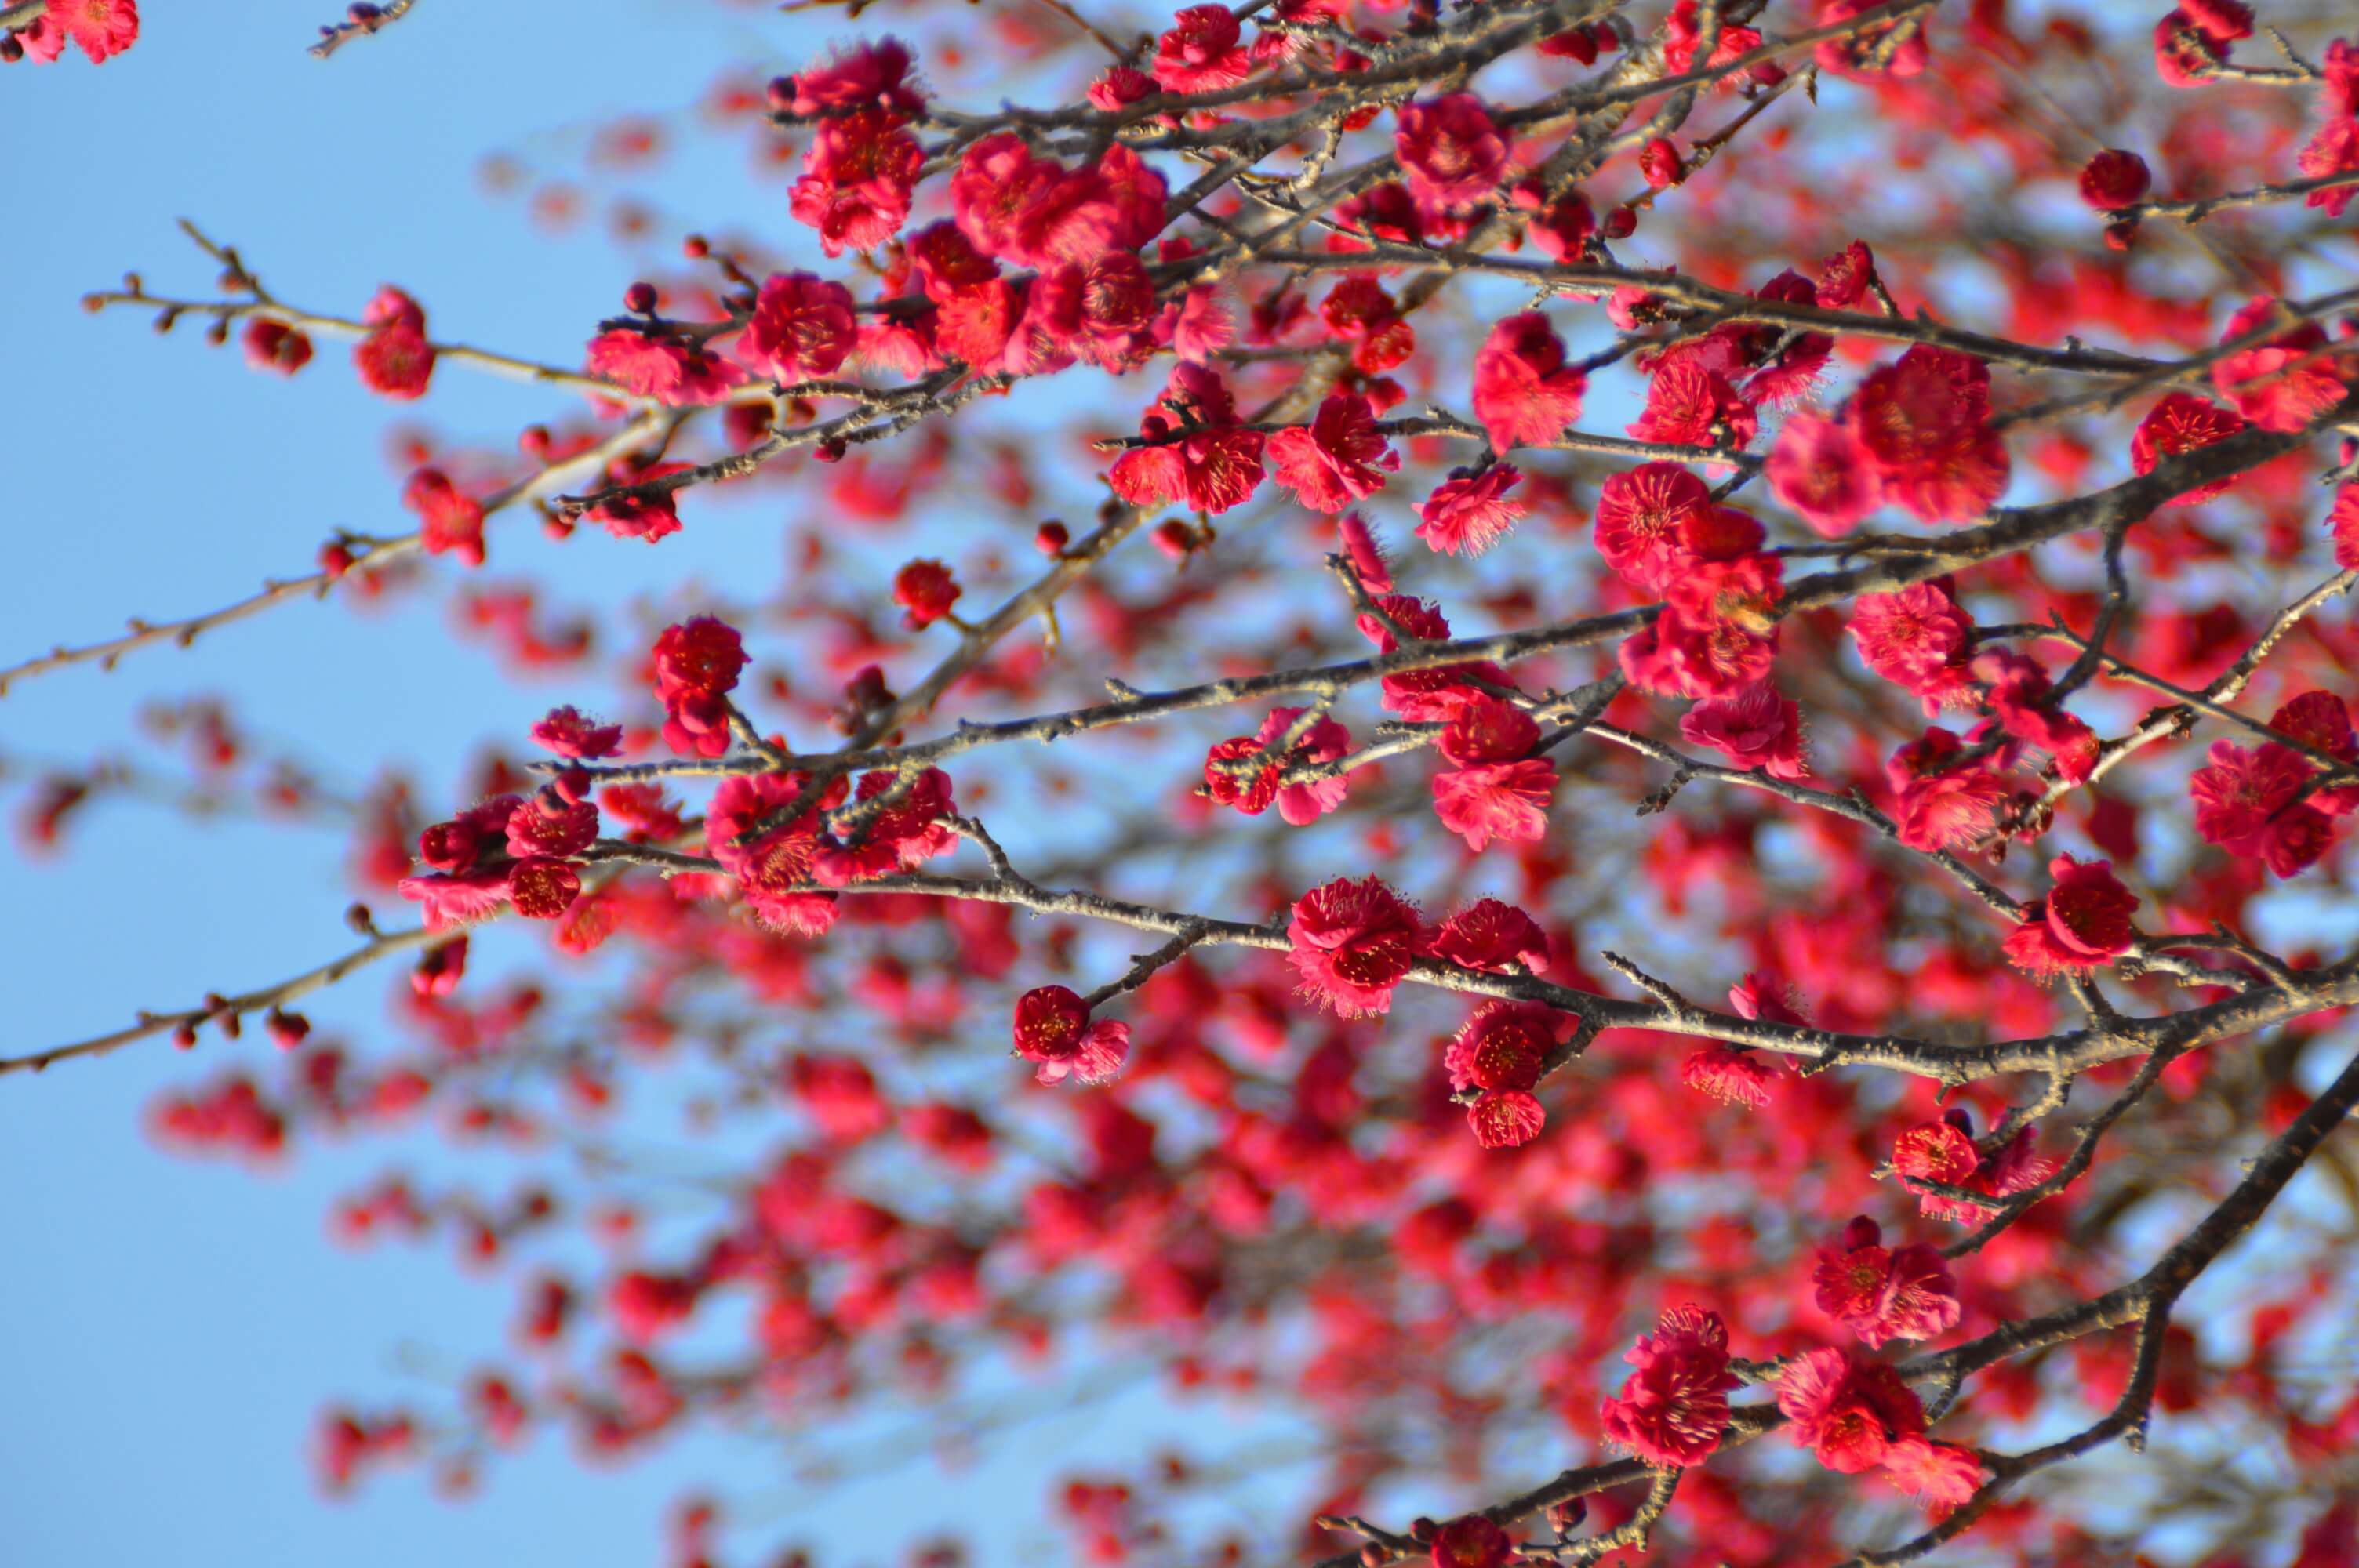 関東最大級 小田原フラワーパーク 渓流の梅園 の梅の花が見頃に Moshi Moshi Nippon もしもしにっぽん